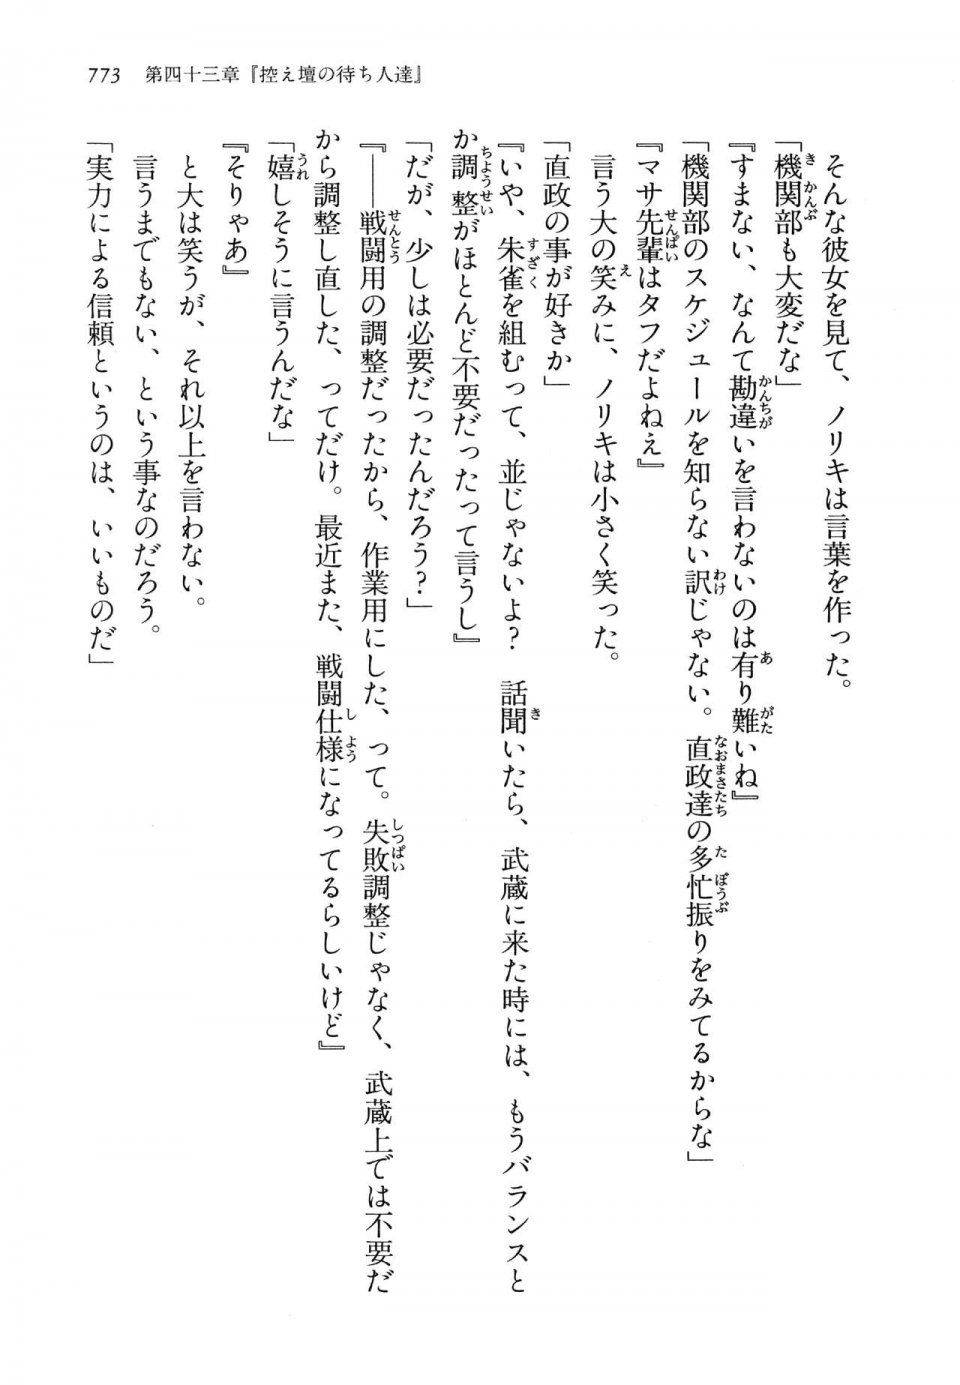 Kyoukai Senjou no Horizon LN Vol 14(6B) - Photo #773